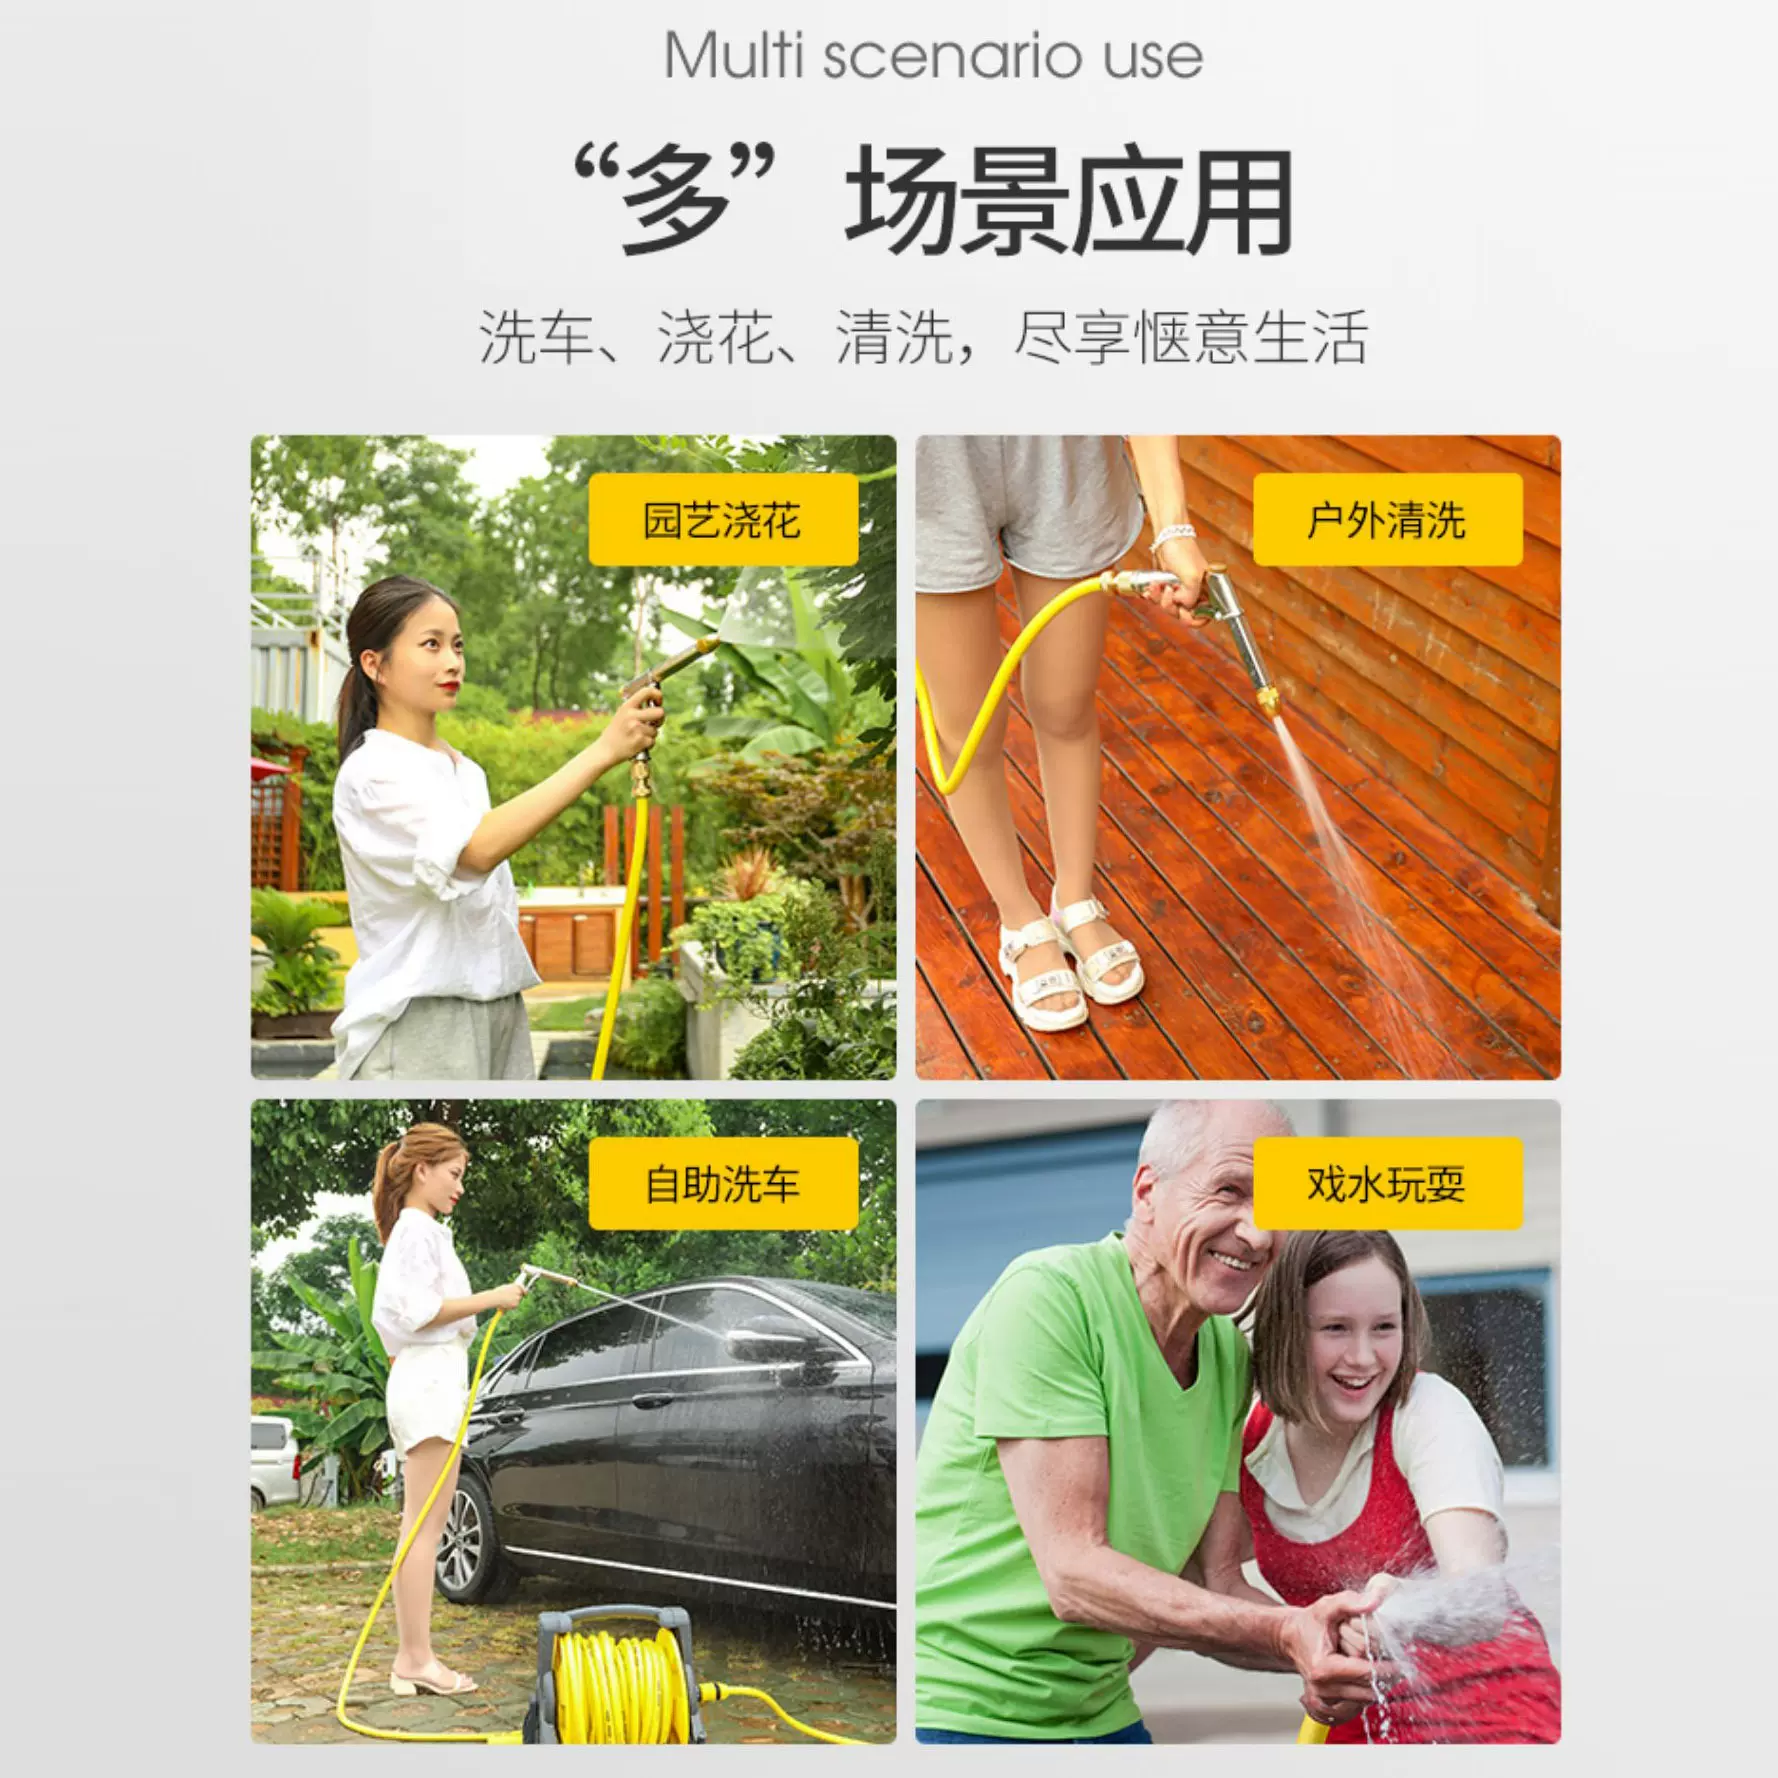 园林套装架软管家用洗车水管浇花现货水管车用品花园水管收纳架-Taobao